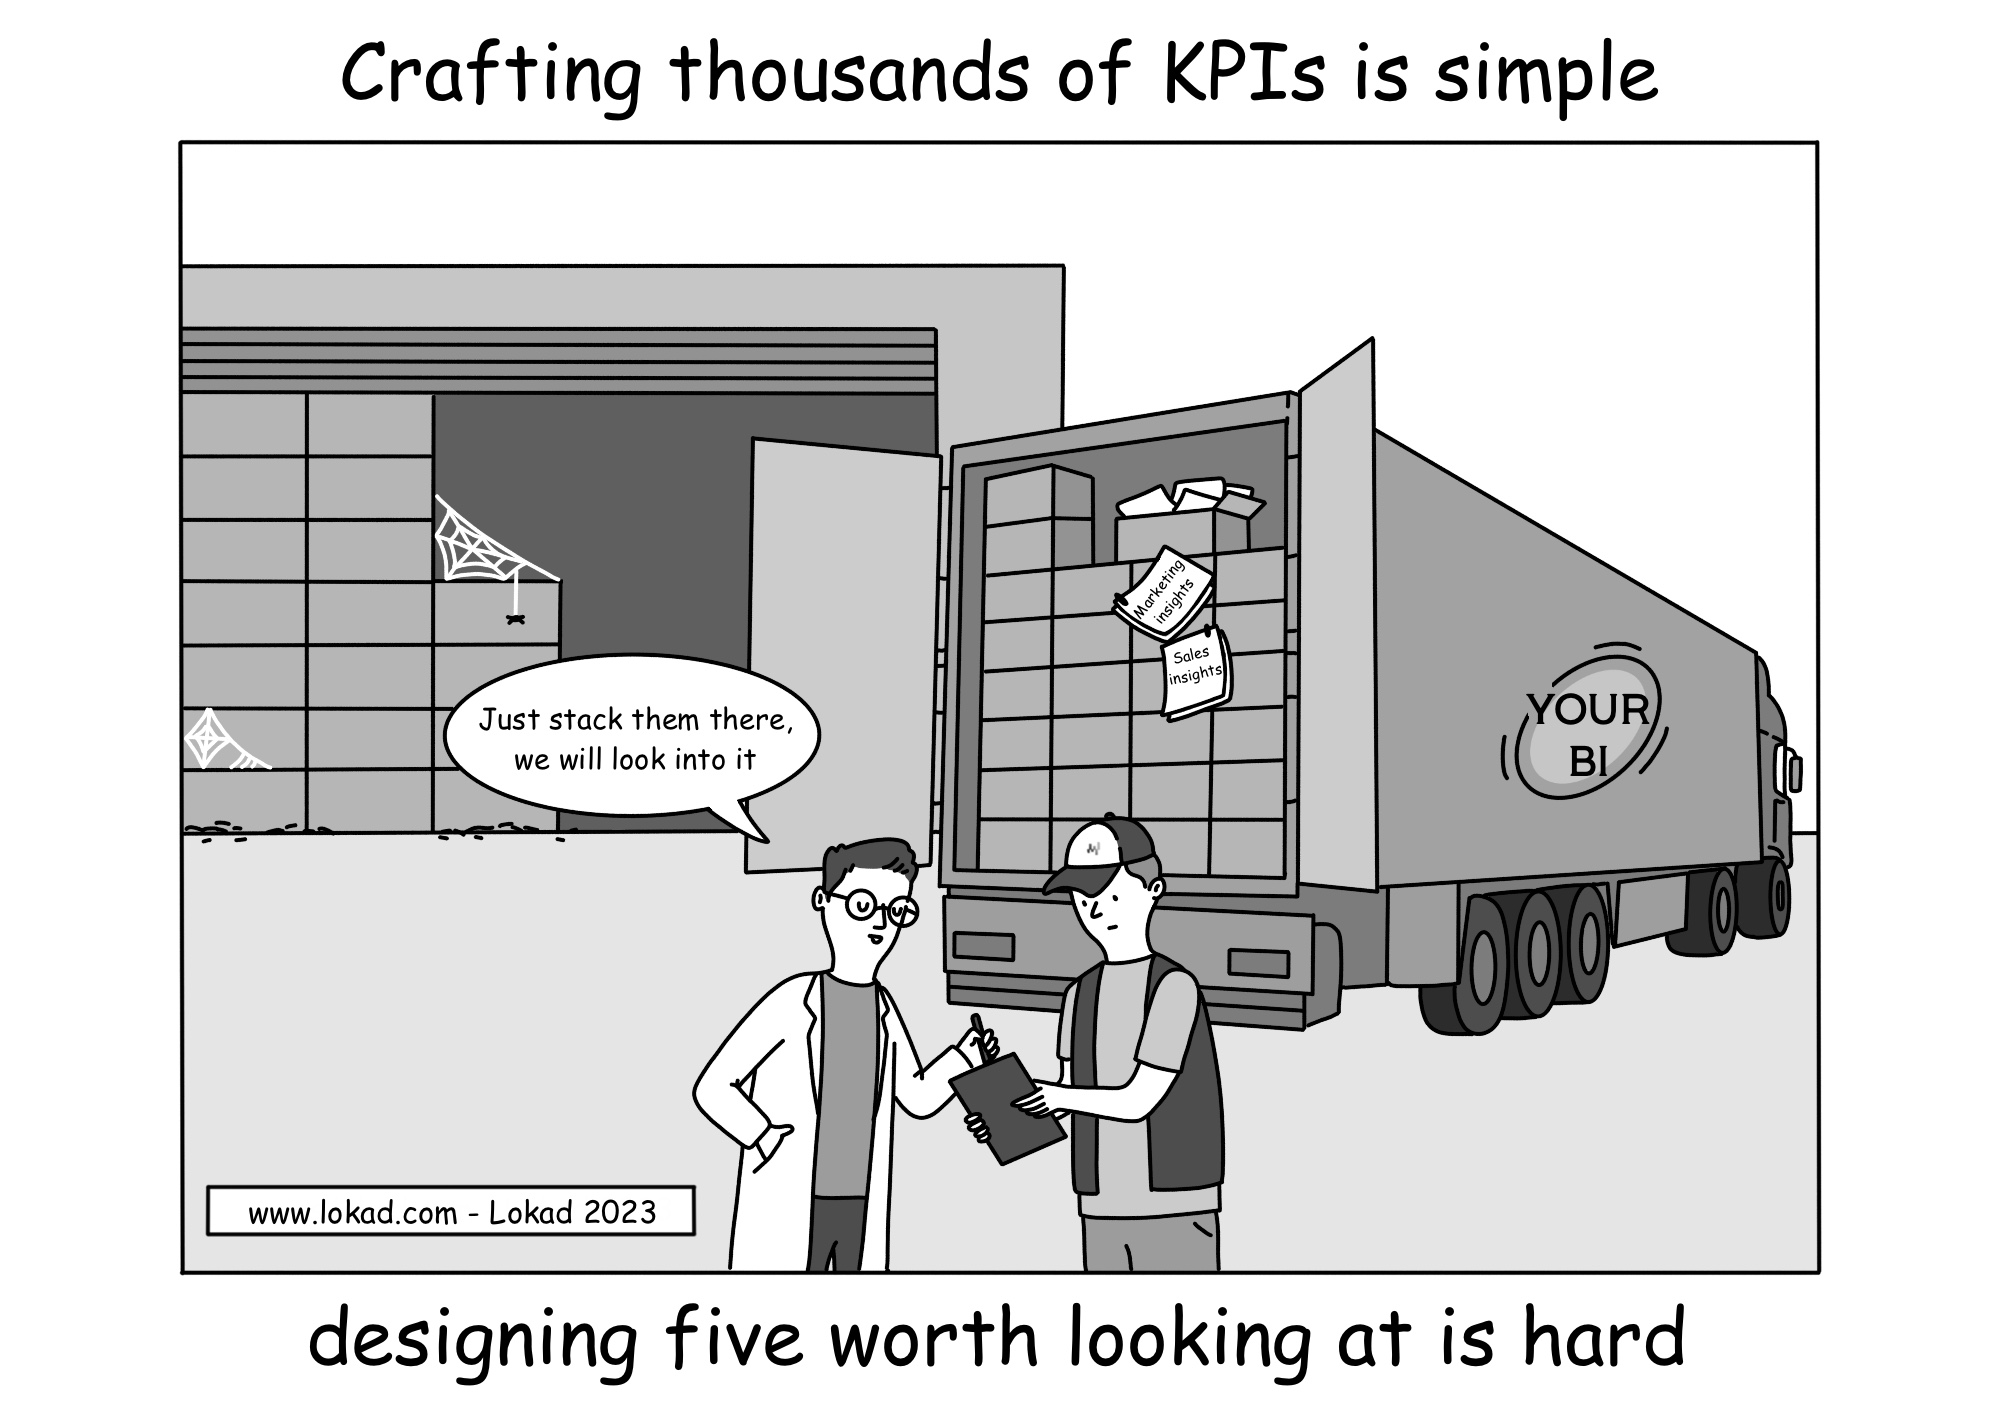 Crear miles de KPIs es simple